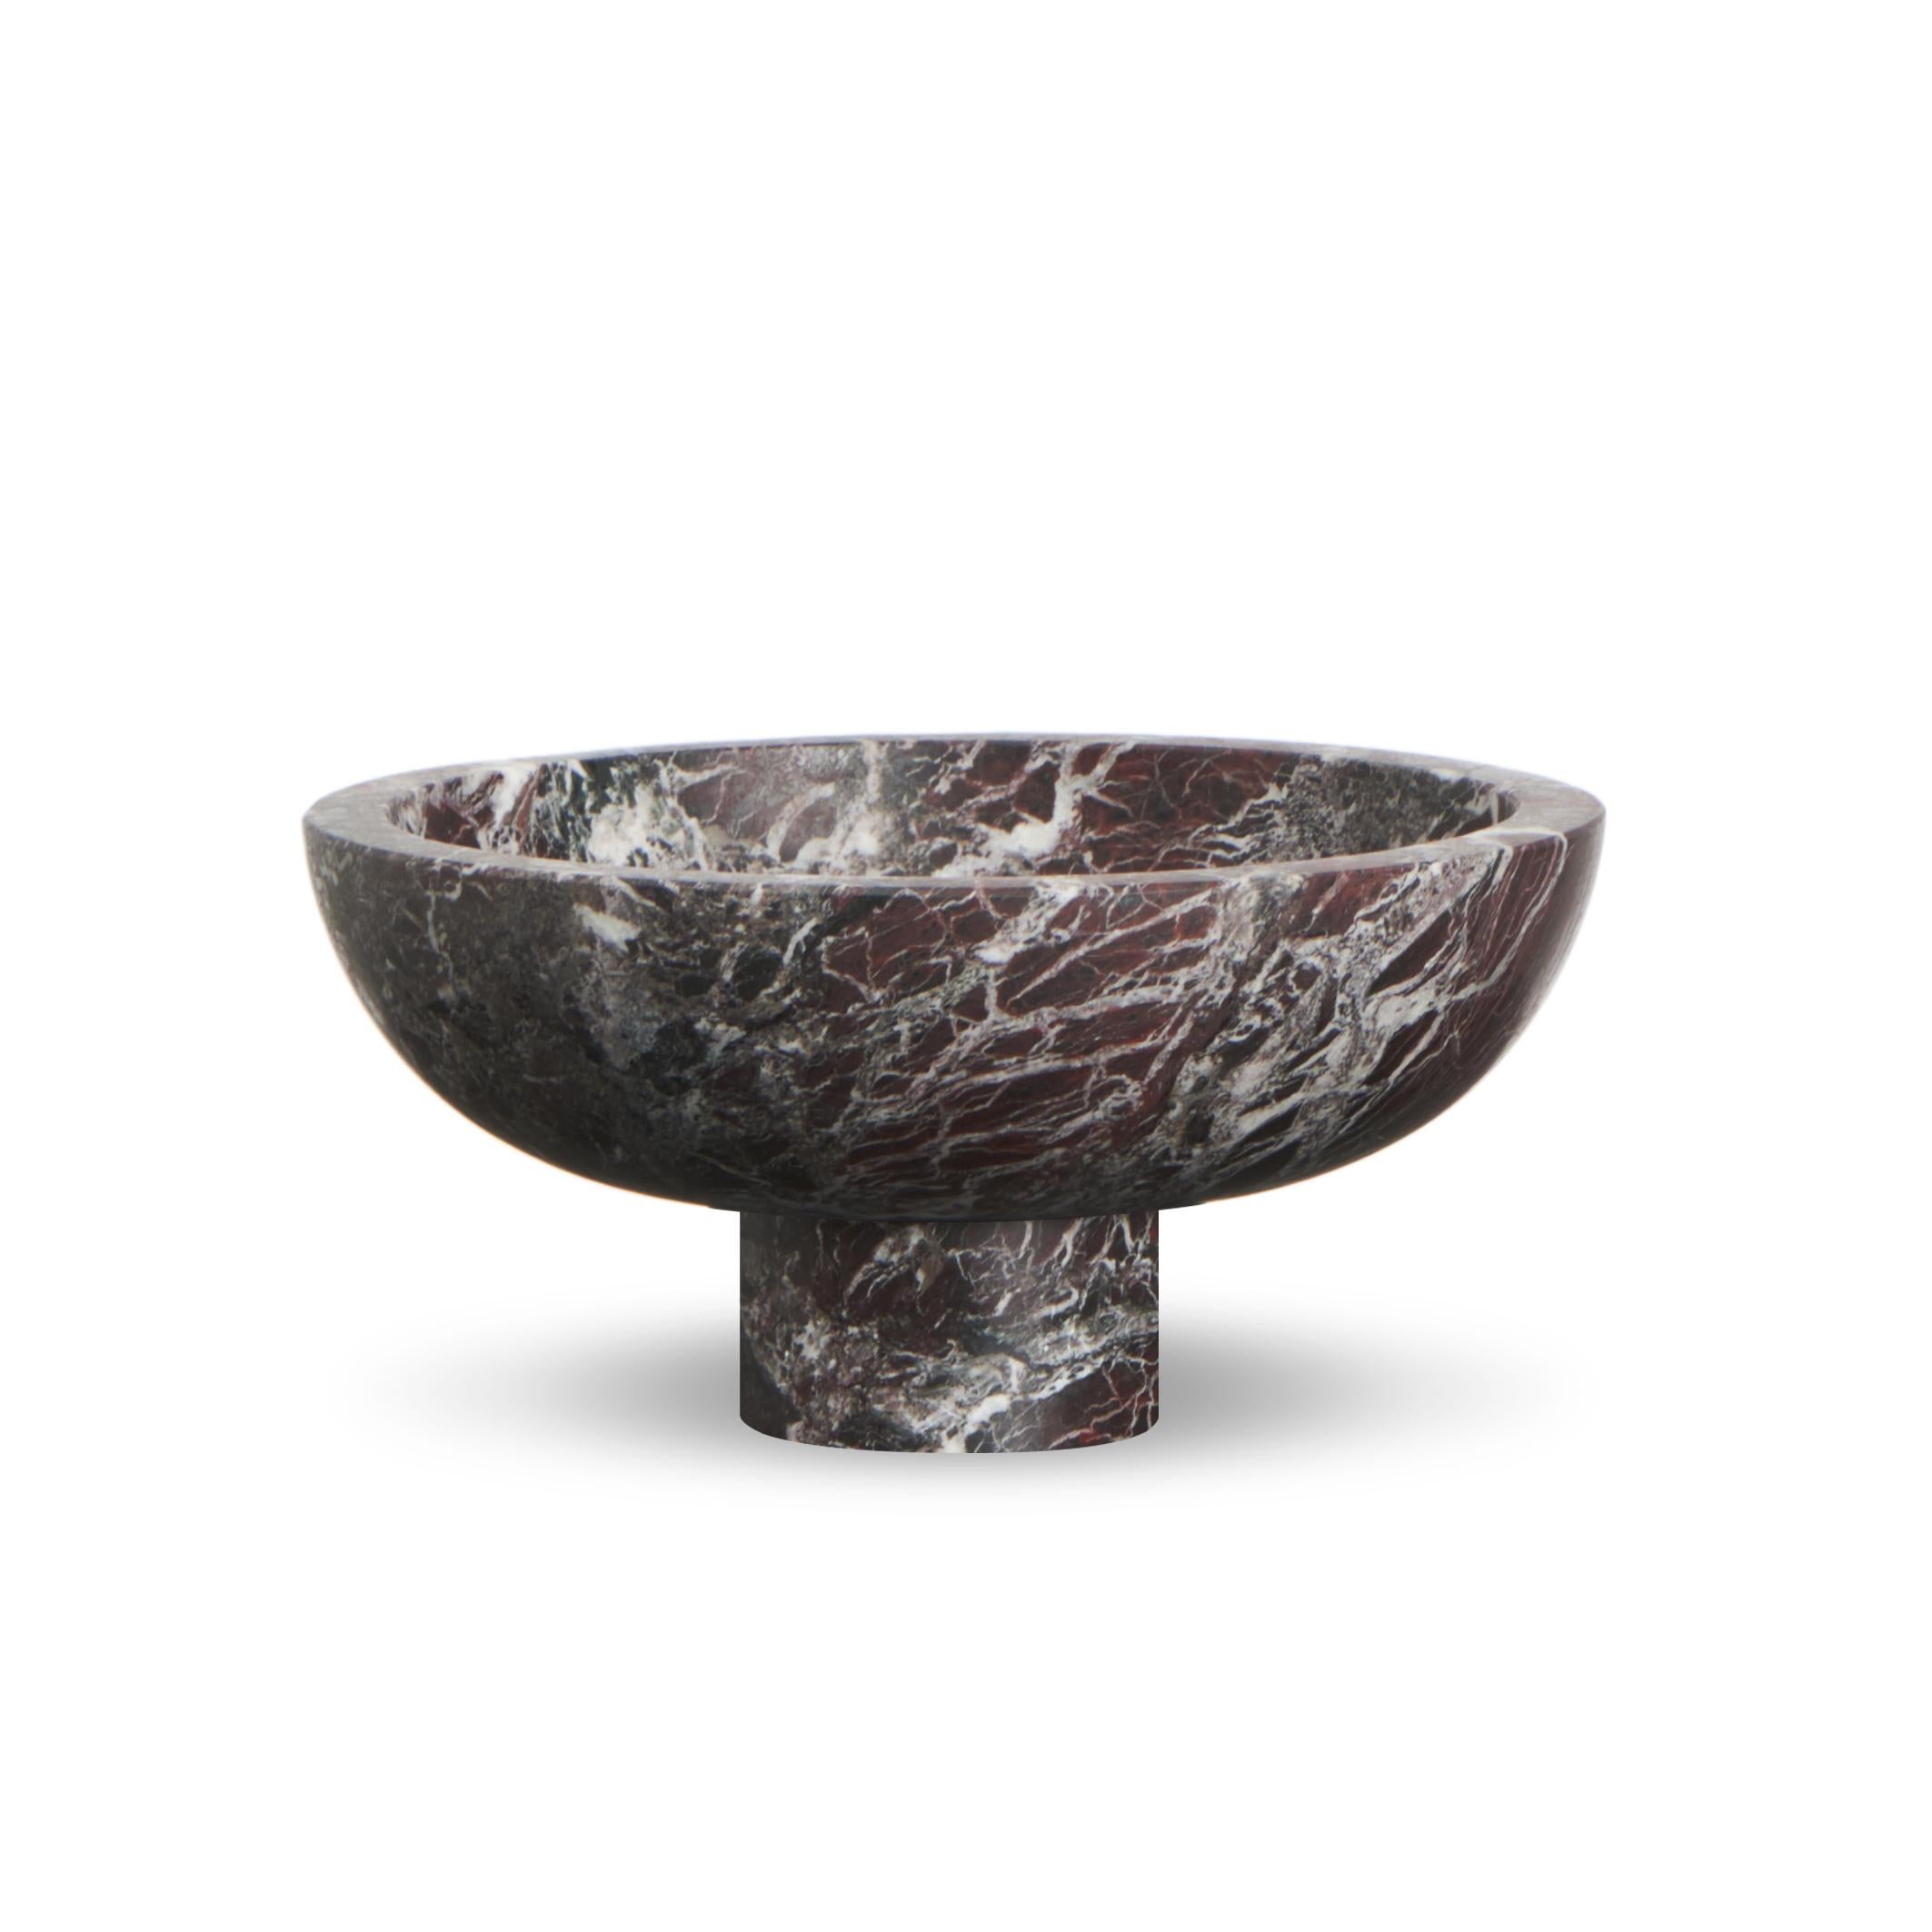 Italian New Modern Fruit Bowl in Black Marble, creator Karen Chekerdjian For Sale